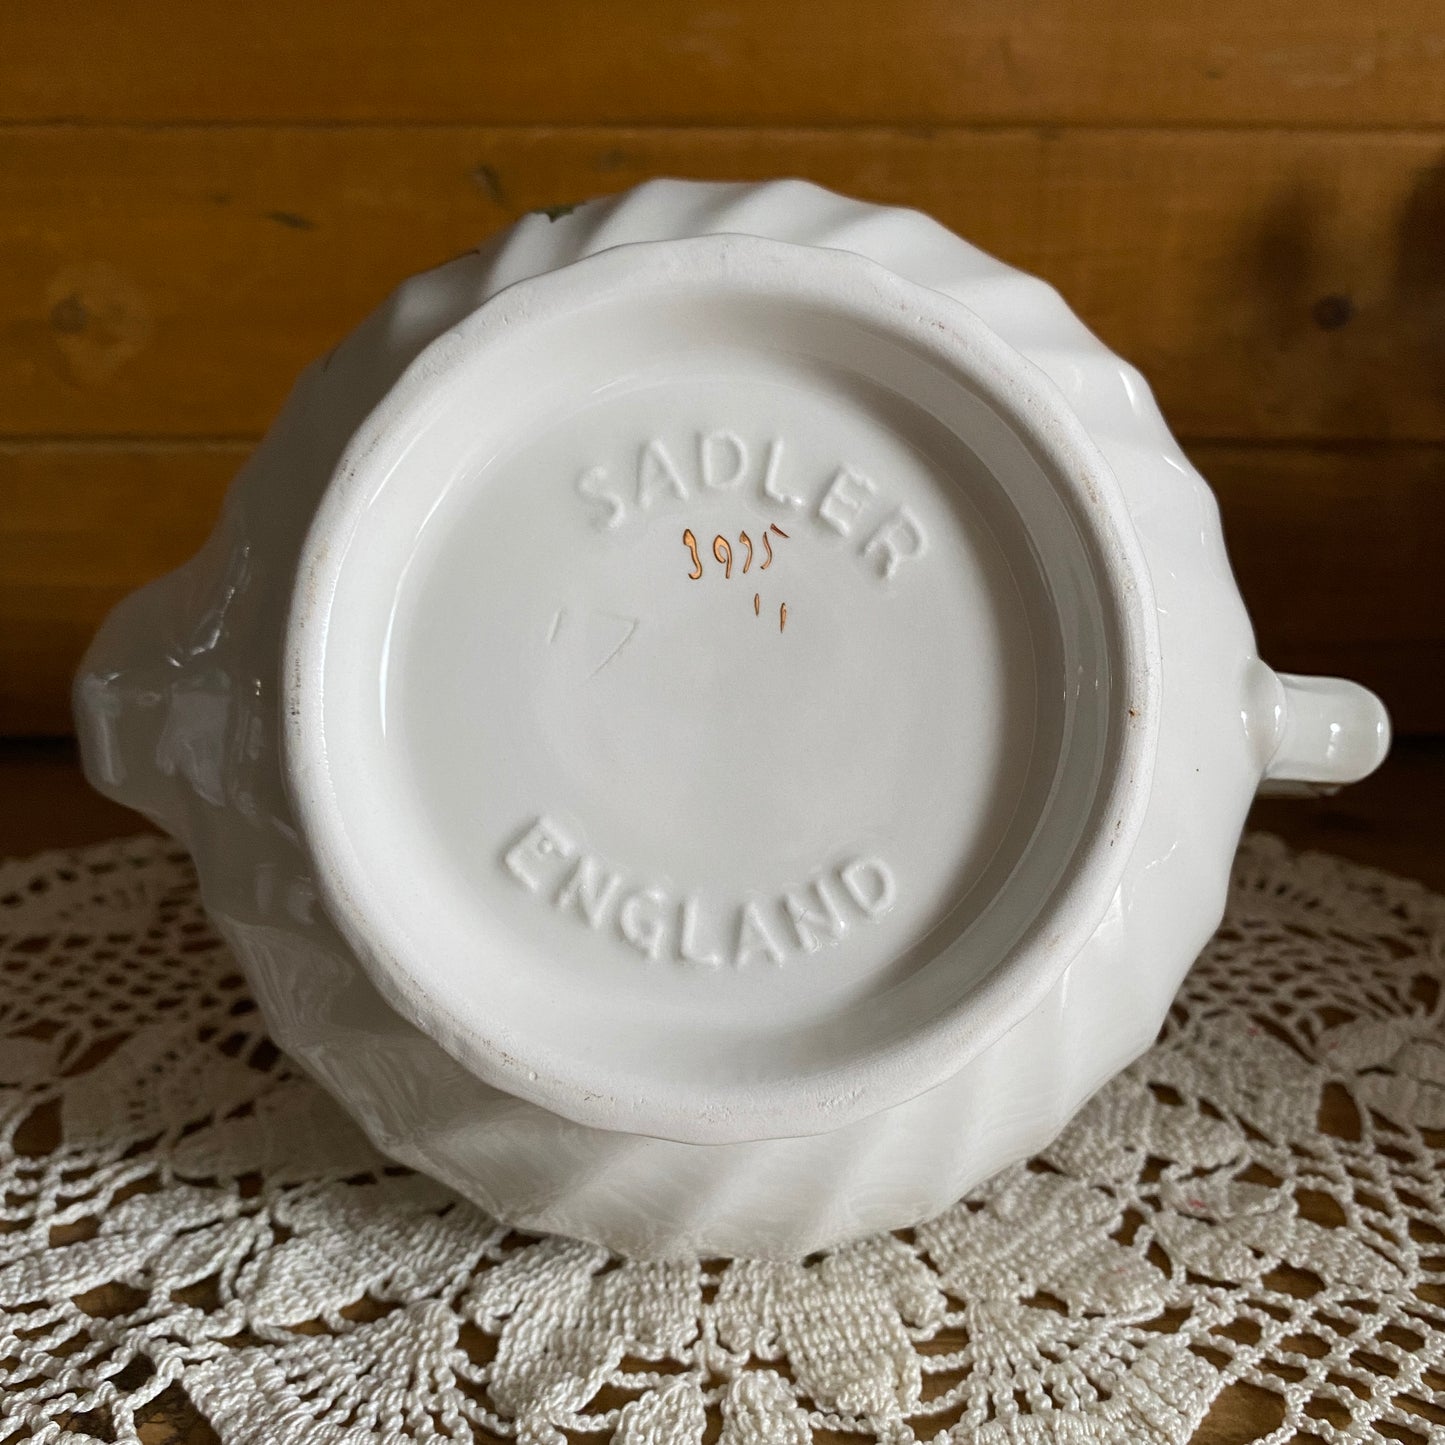 Sadler England Poinsettia Teapot